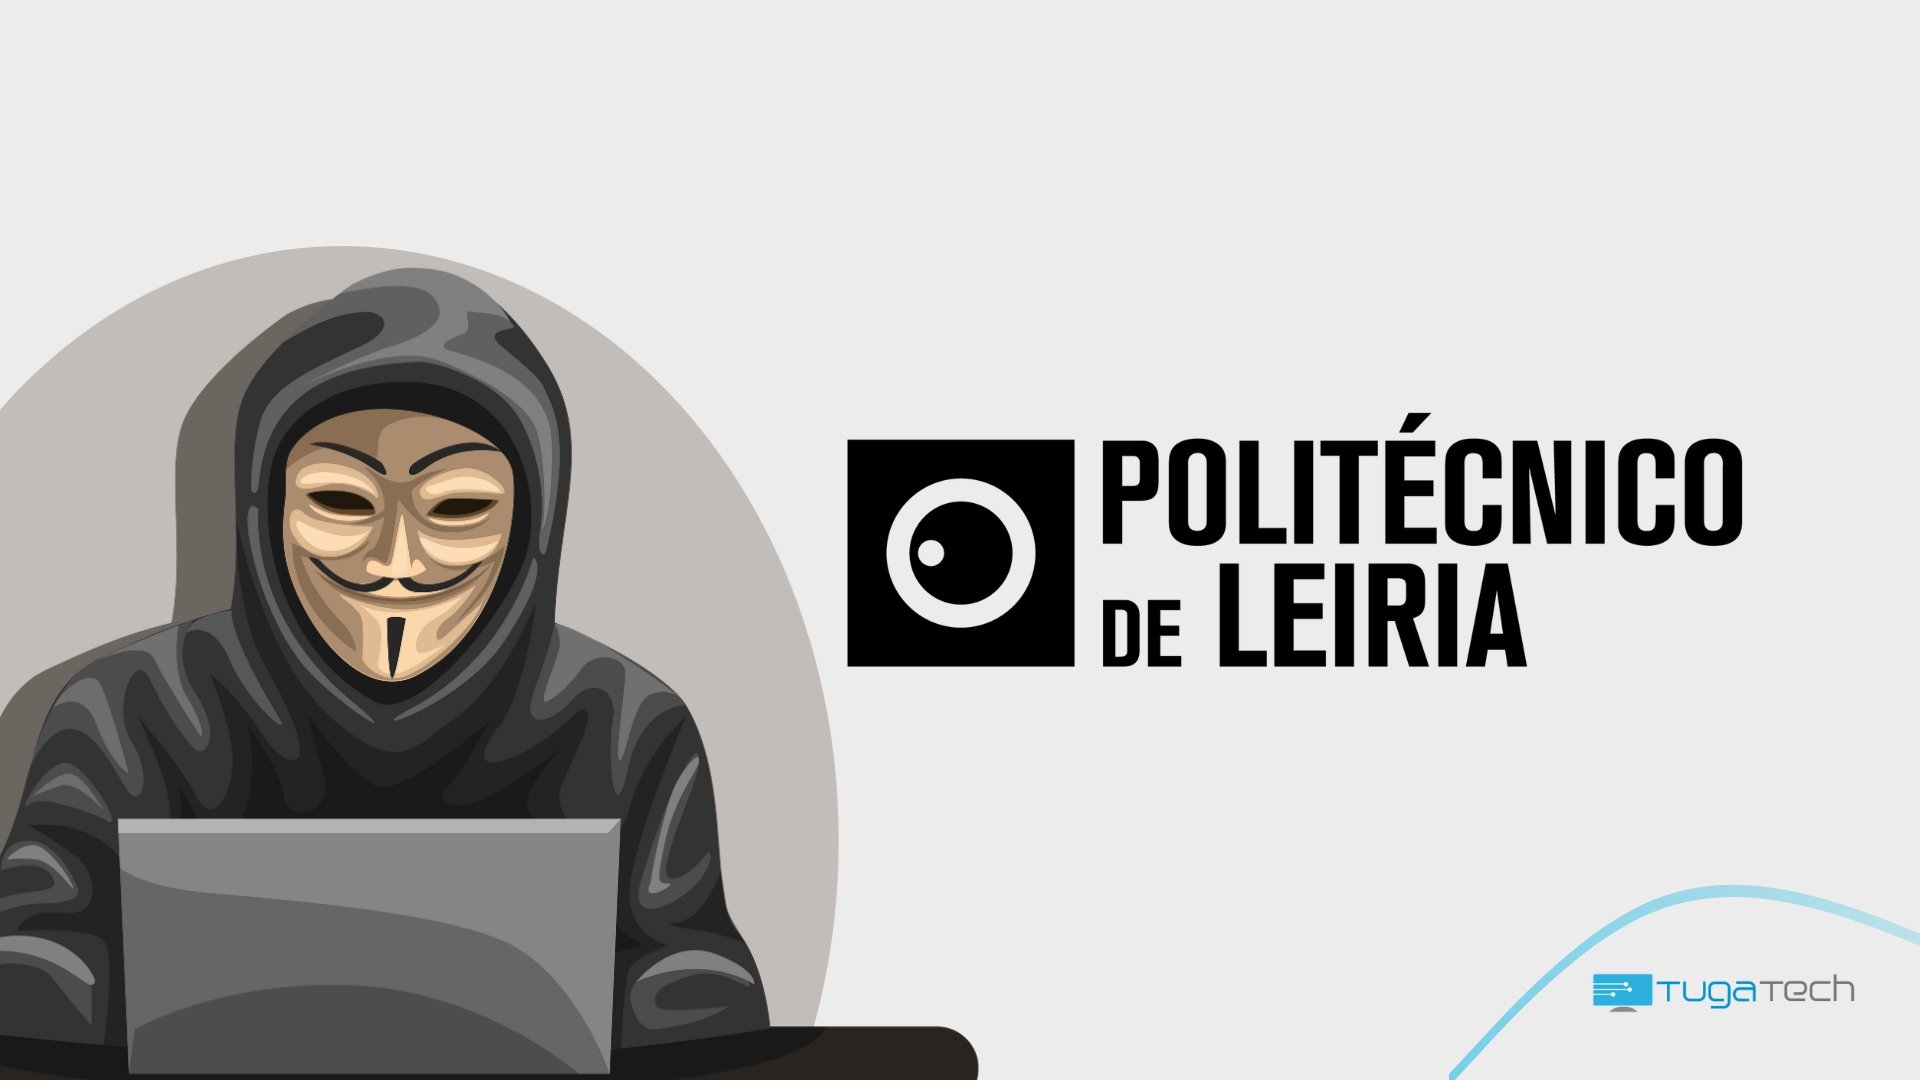 Politénico de Leiria com hacker